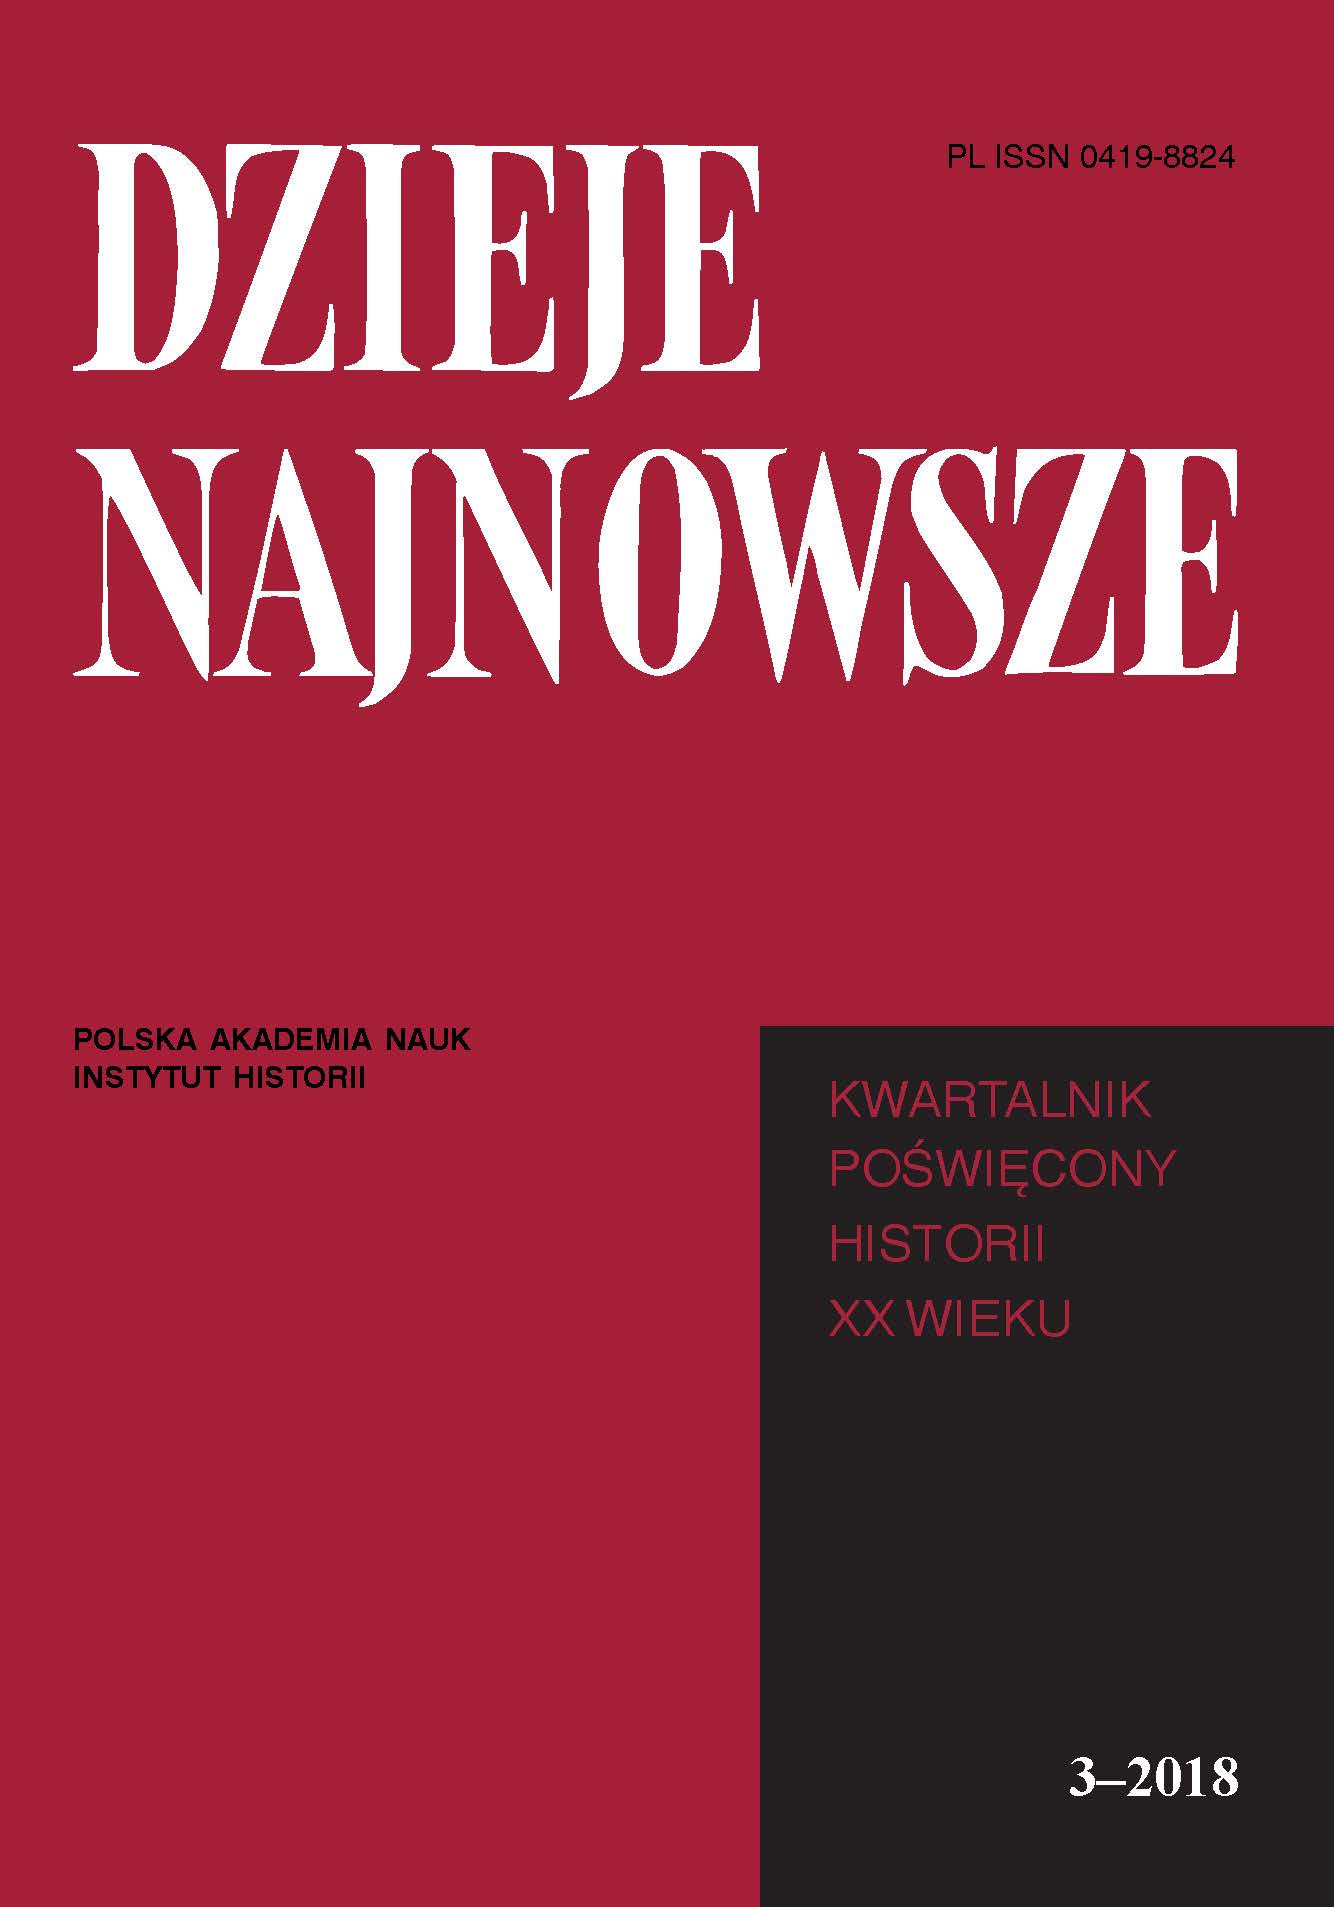 Debate: Architects of independence – Małgorzata Gmurczyk-Wrońska, Paweł Libera, Krzysztof Kawalec, Marek Kornat, Andrzej Nowak, Włodzimierz Suleja Cover Image